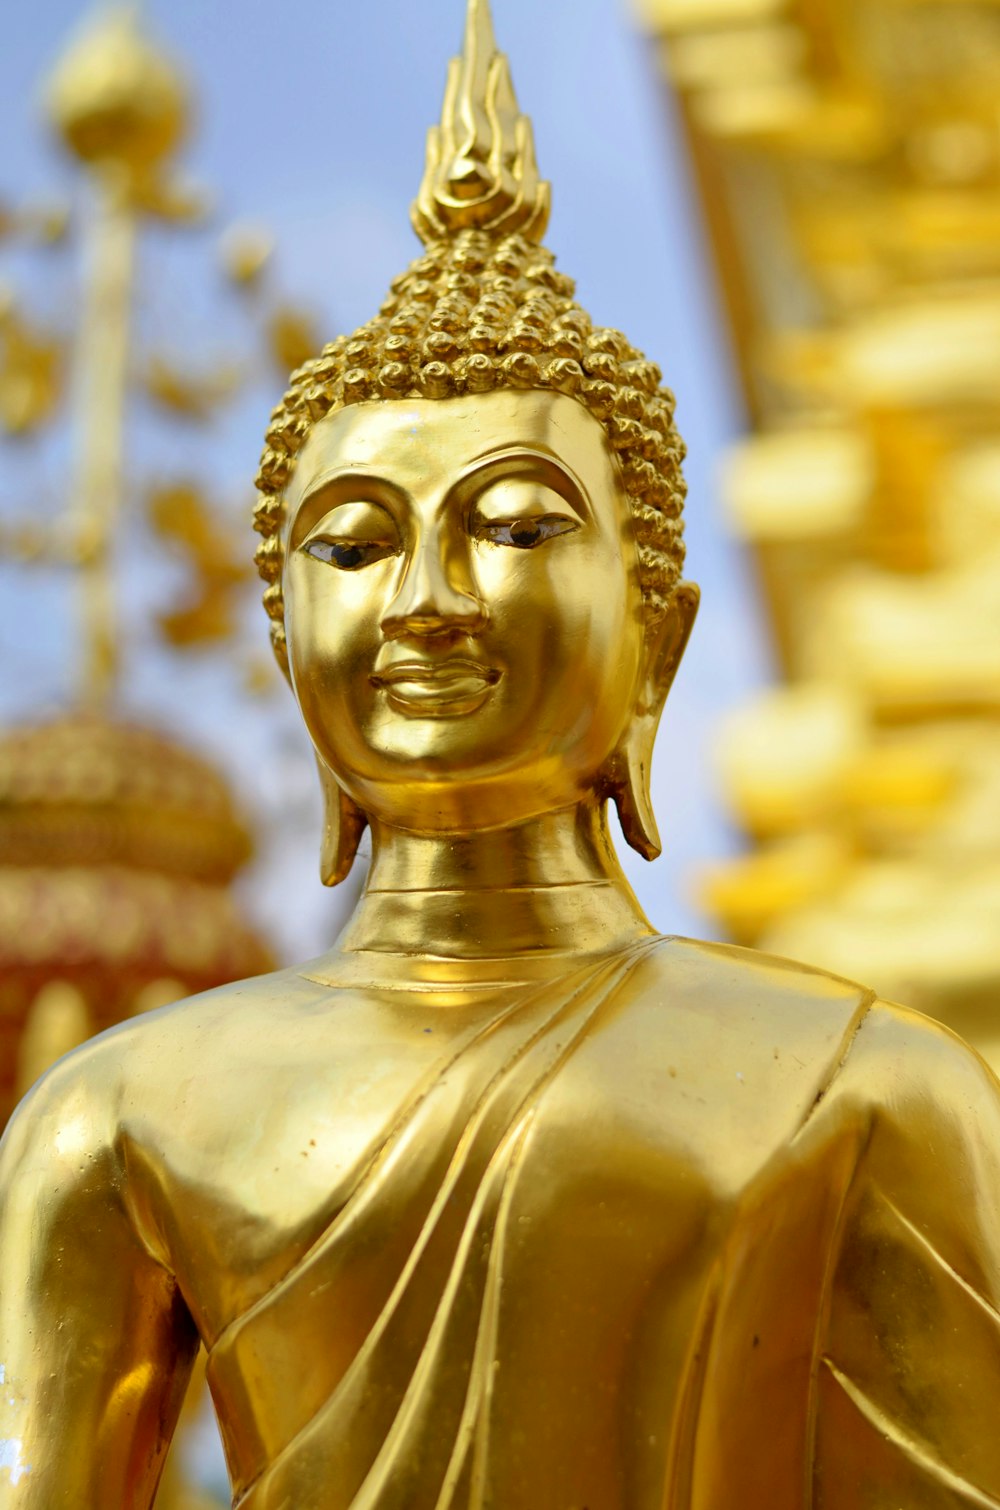 Gold buddha statue during daytime photo – Free Thailand Image on Unsplash